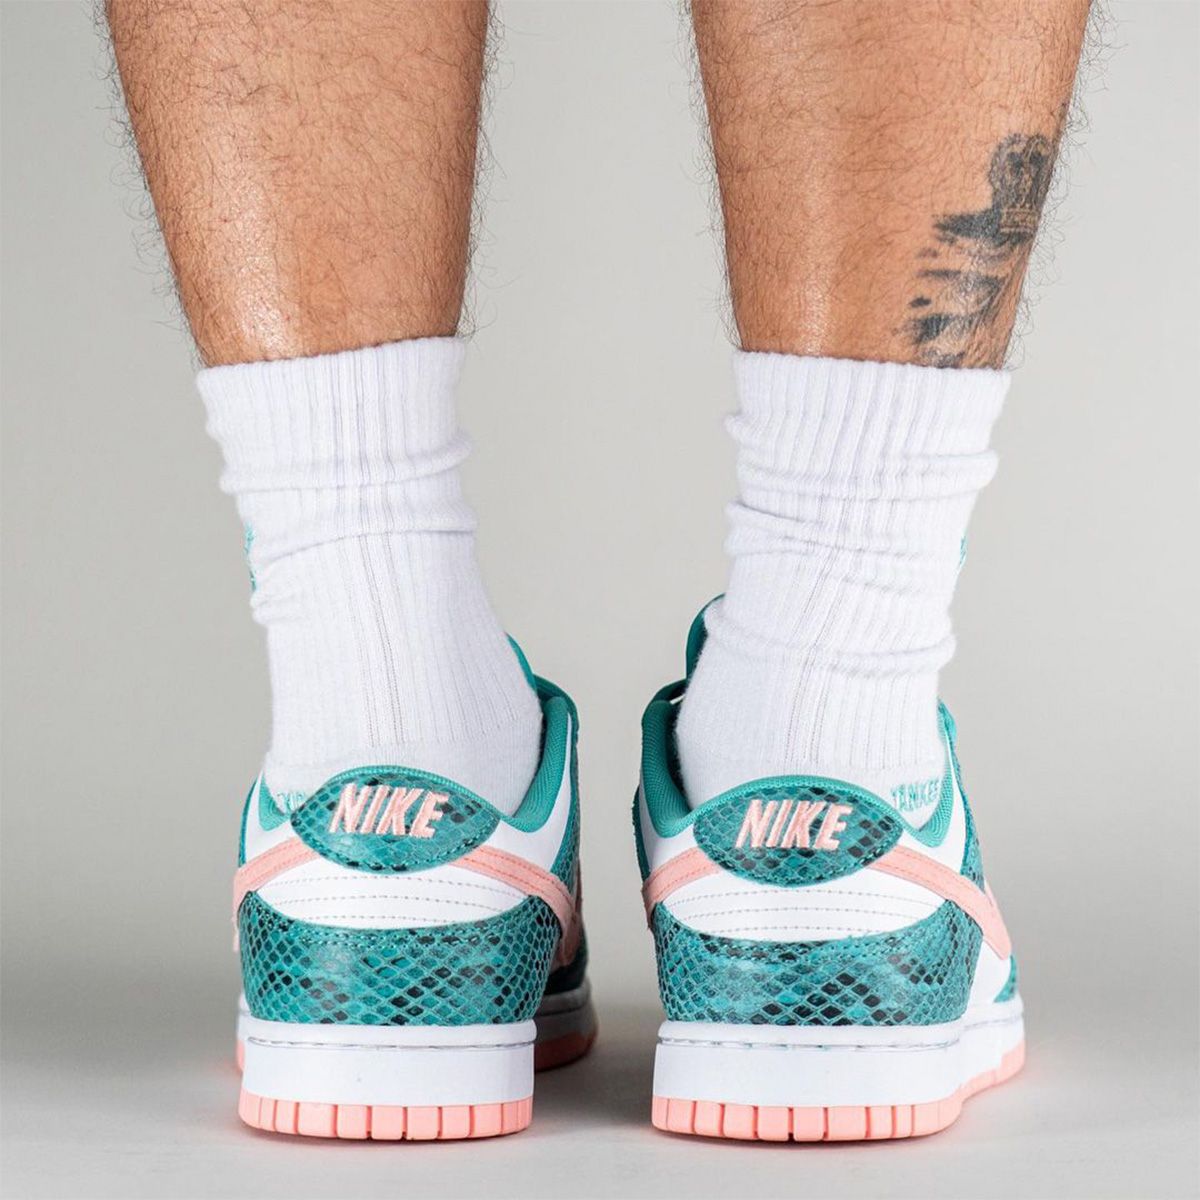 Nike Dunk Low “Green Snake” Release Info